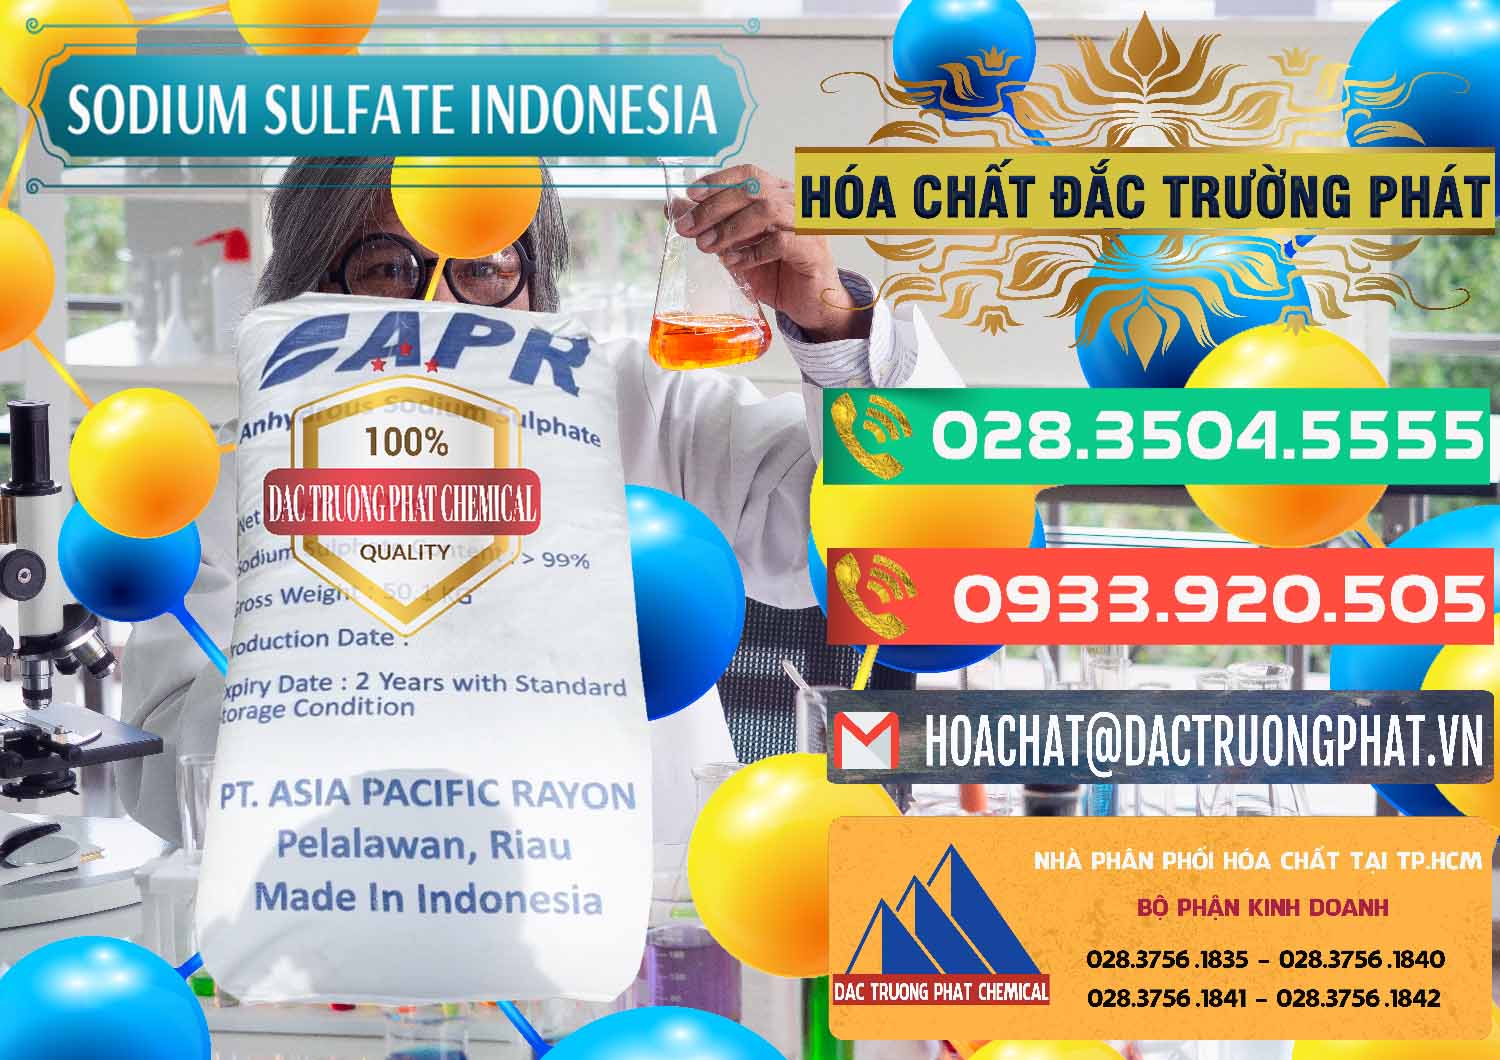 Đơn vị chuyên bán & cung cấp Sodium Sulphate - Muối Sunfat Na2SO4 APR Indonesia - 0460 - Cty cung ứng và phân phối hóa chất tại TP.HCM - congtyhoachat.com.vn